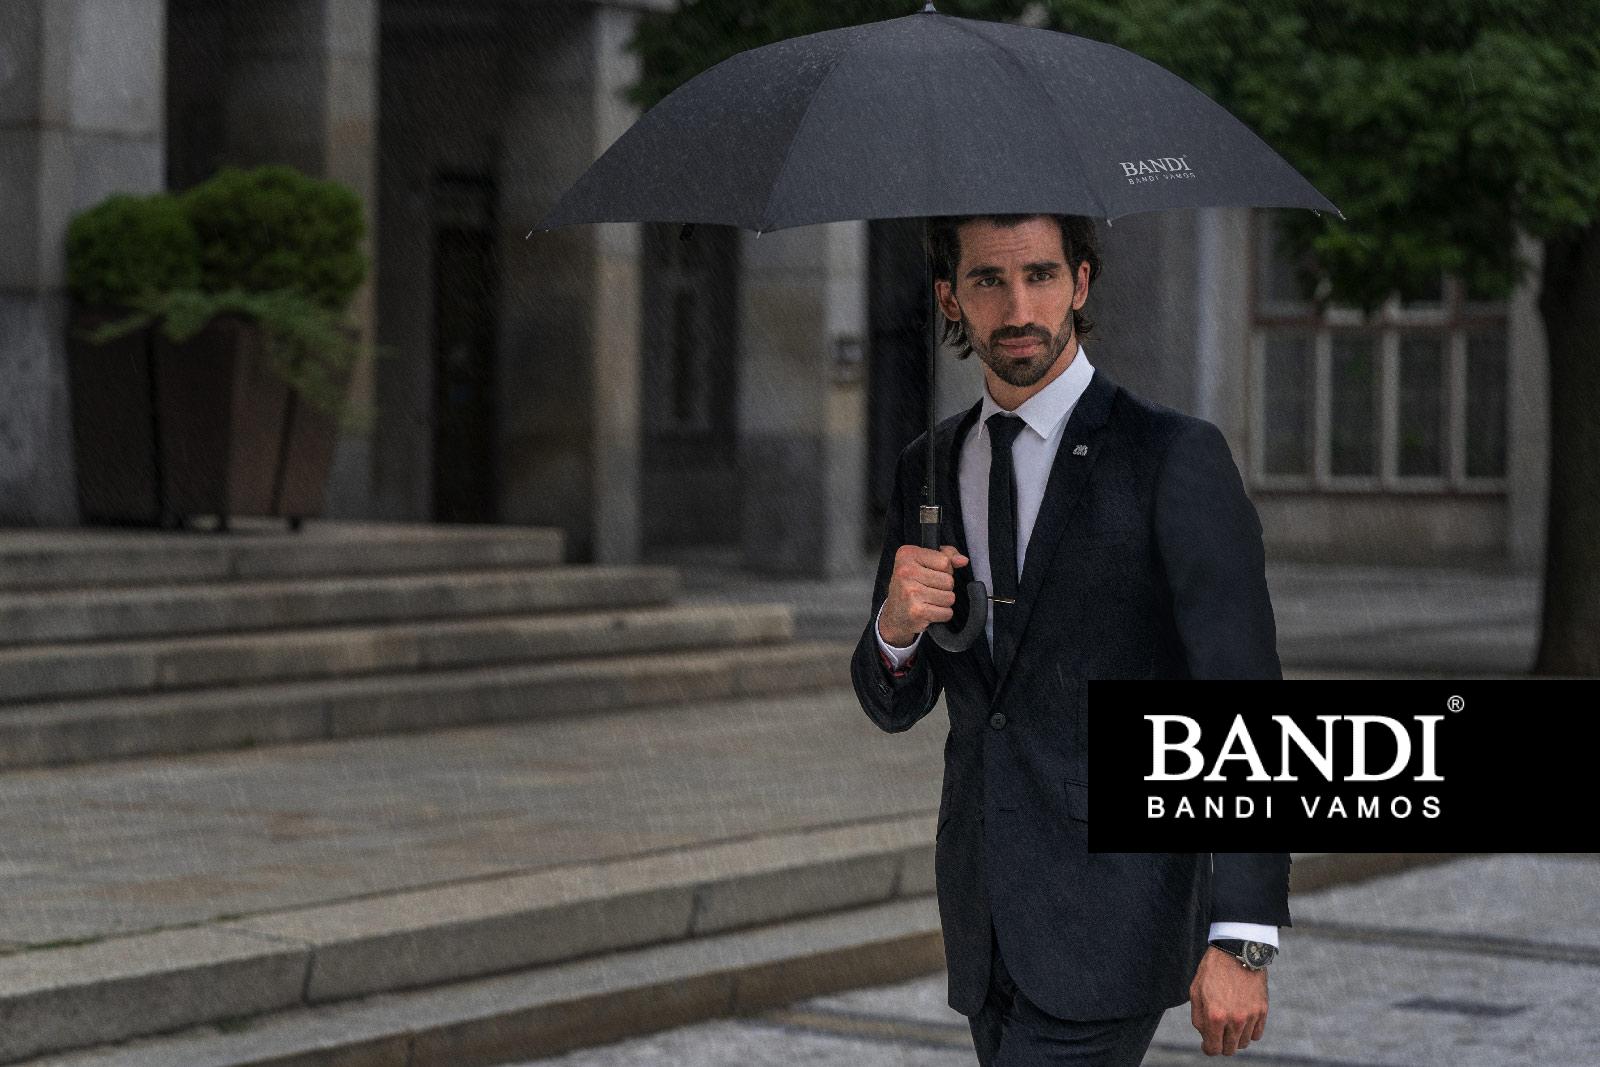 Čierne pánske dáždniky BANDI vás ochránia pred akoukoľvek neprizňou počasia